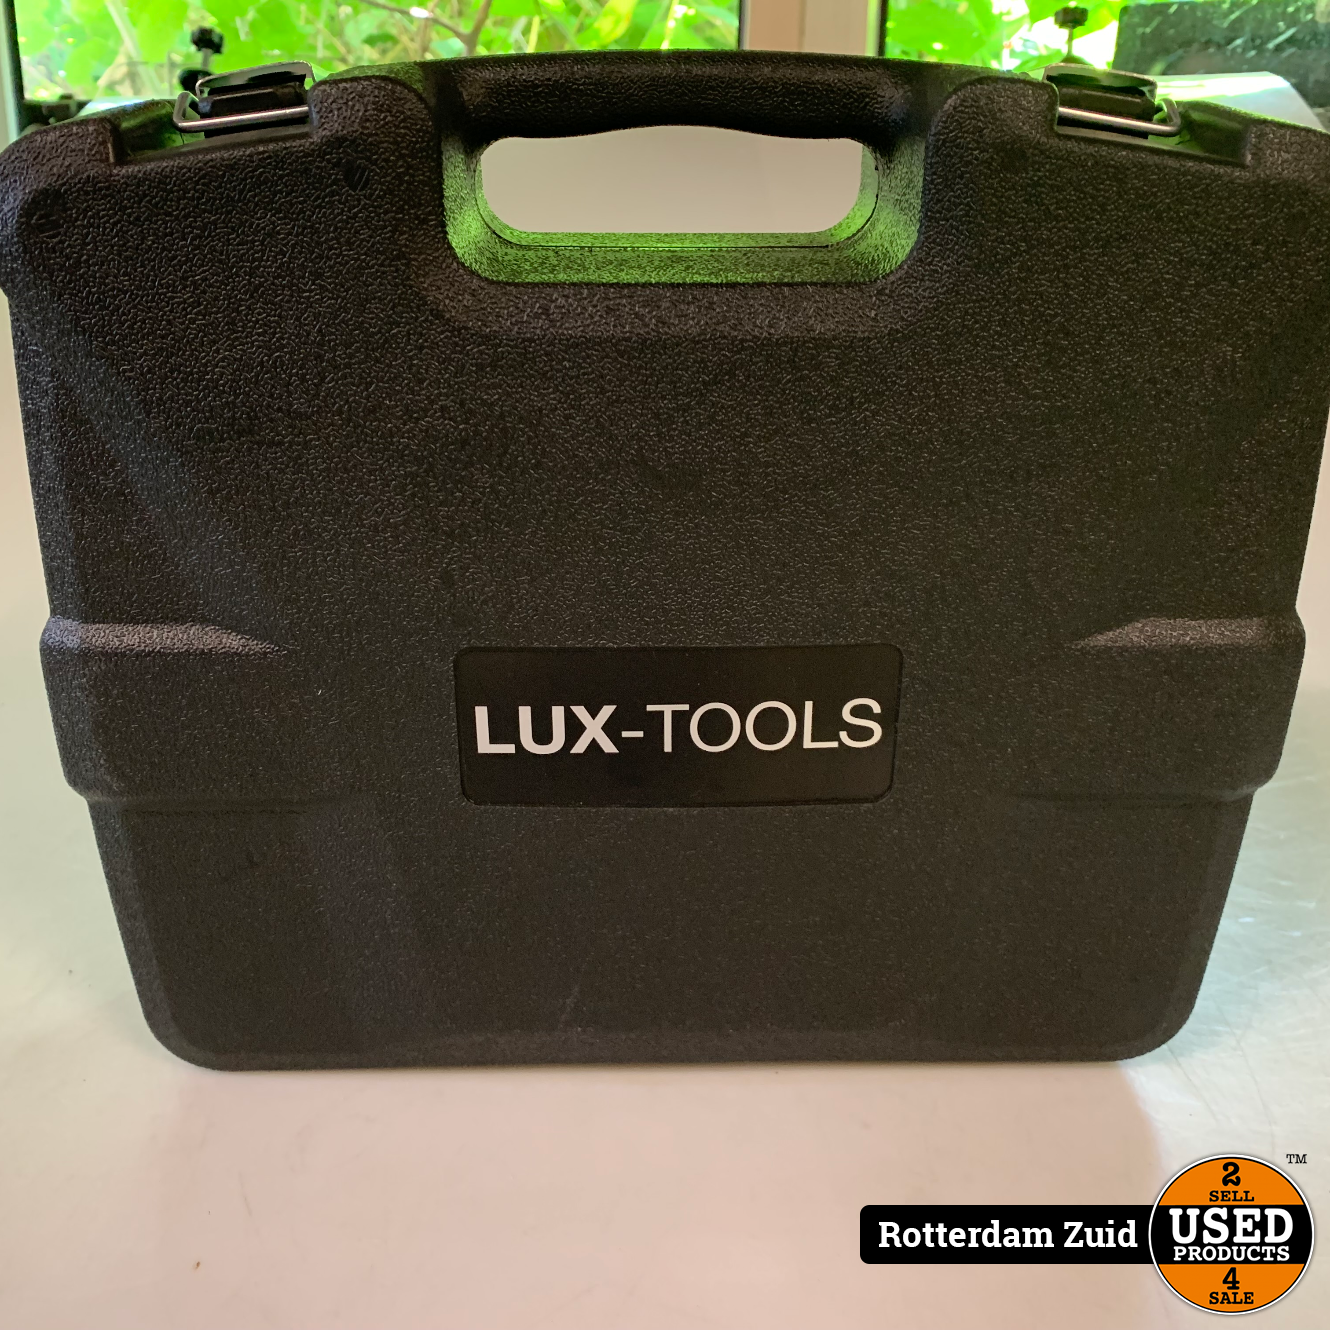 Besmetten stormloop ochtendgloren Lux Tools Schroef boormachine | Nieuw in Koffer met lader | Met Garantie -  Used Products Rotterdam Zuid